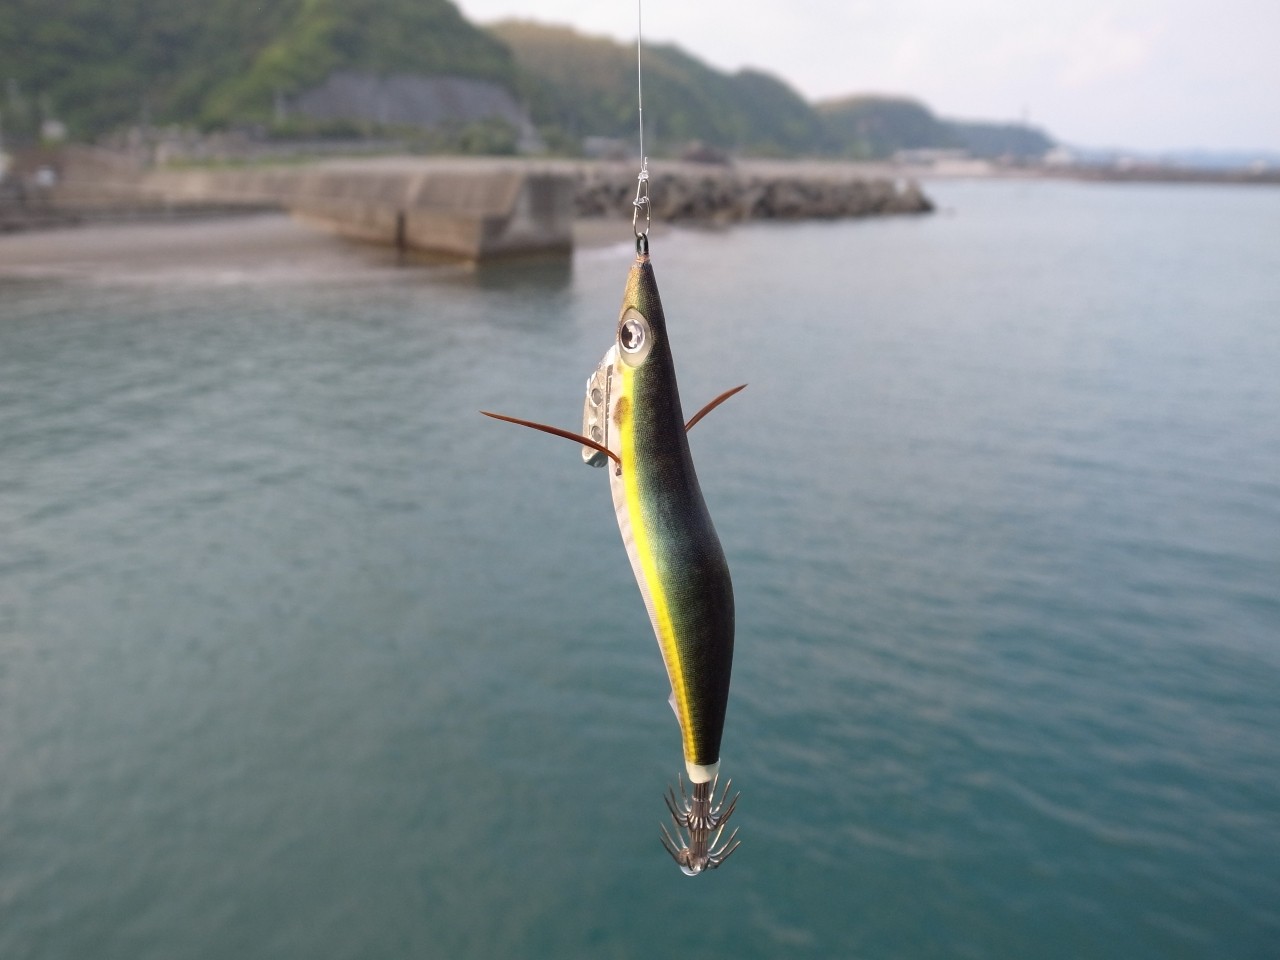 エギング 15年04月27日 春野漁港へアオリイカ狙いで釣行しました Yamashita エギ王kブログモニター 海辺の狩人